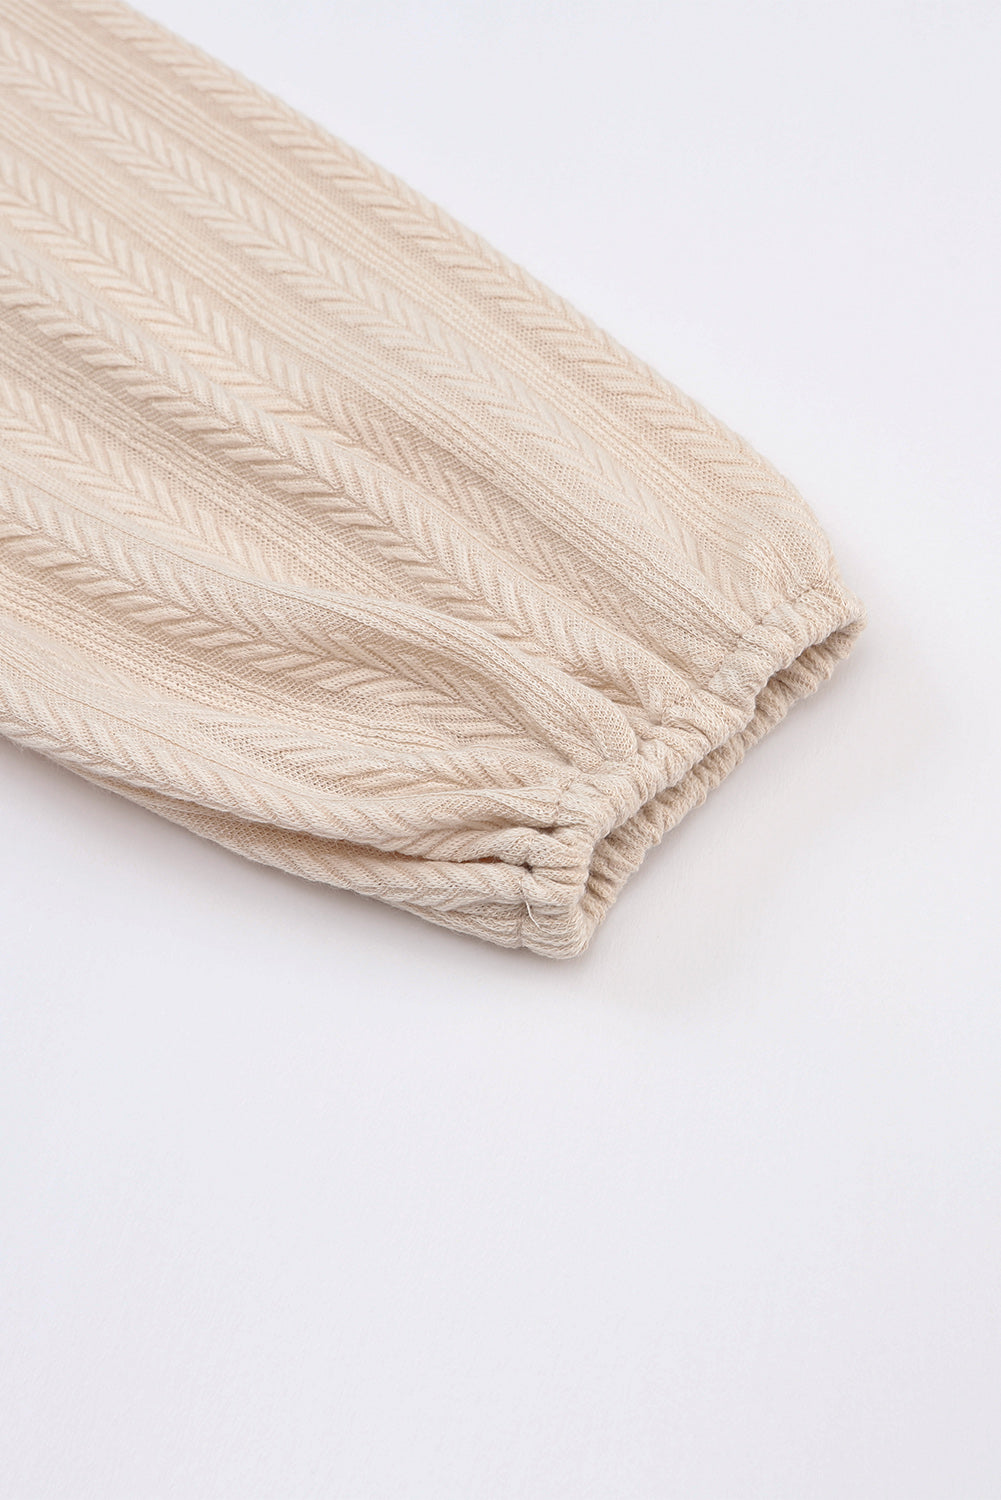 Robe en tricot à manches bulles froncées sur le côté, texture tactile abricot